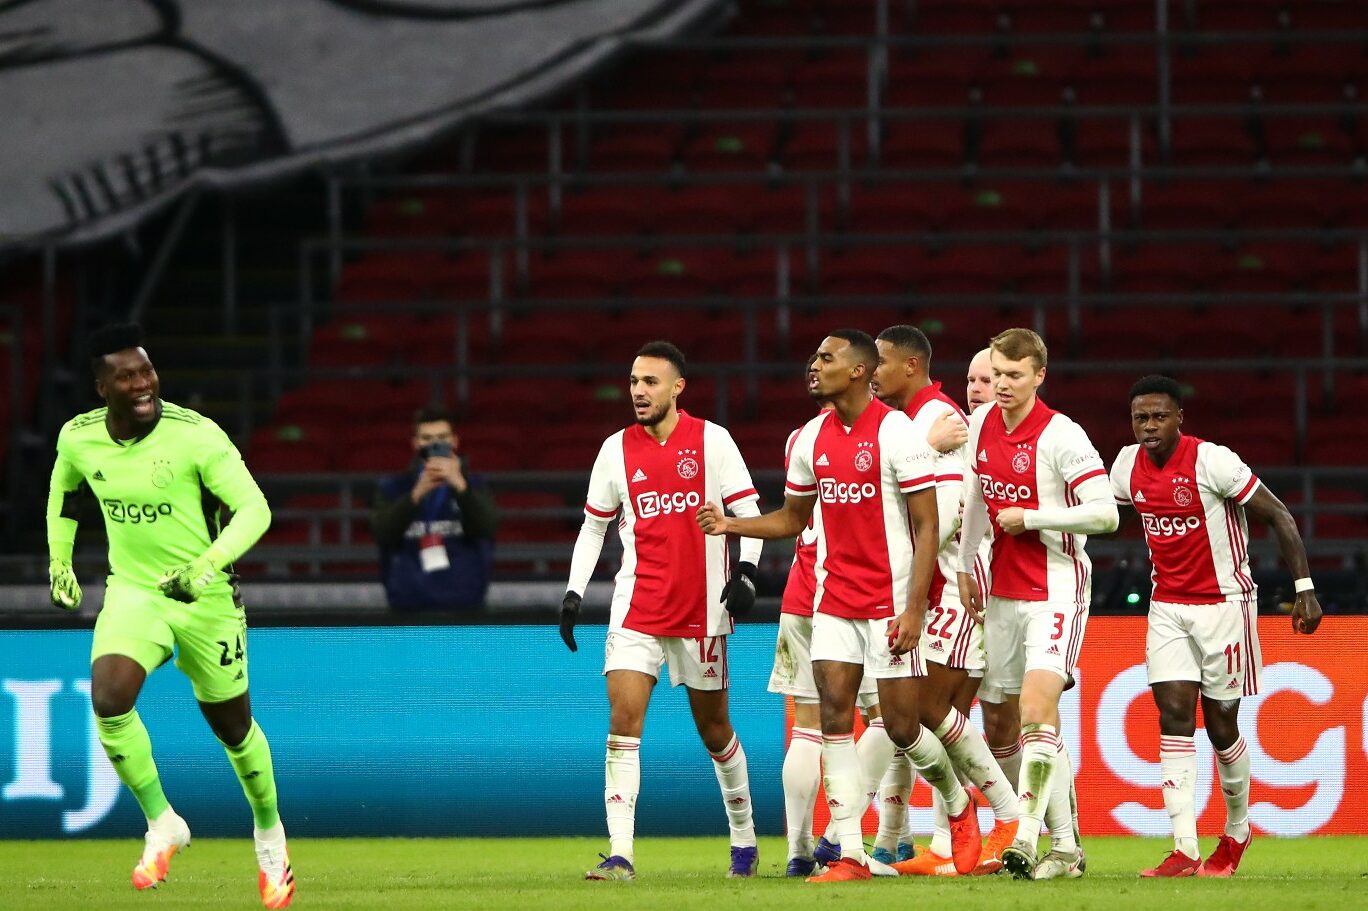 Haller resumes scoring duty in Ajax late goal rush victory against FC Twente